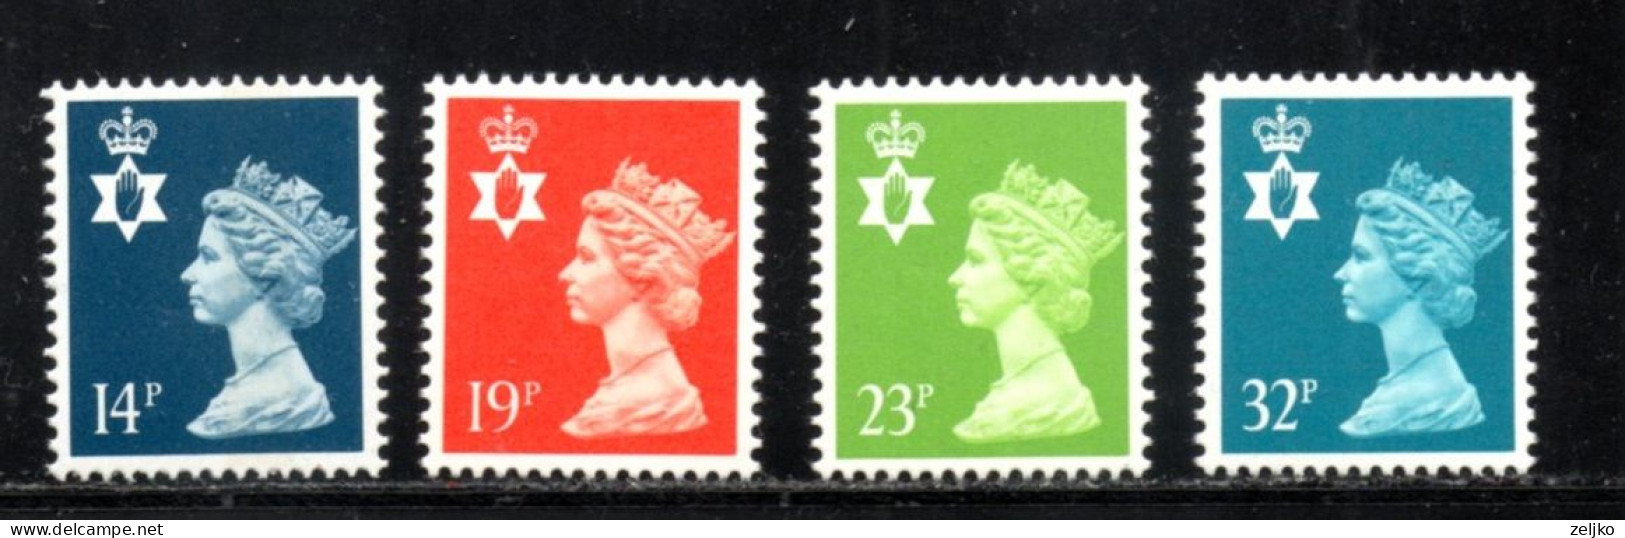 UK, GB, Great Britain, Regional Issue, North Ireland, MNH, 1988, Michel 47 - 50, Queen Elizabeth - Northern Ireland